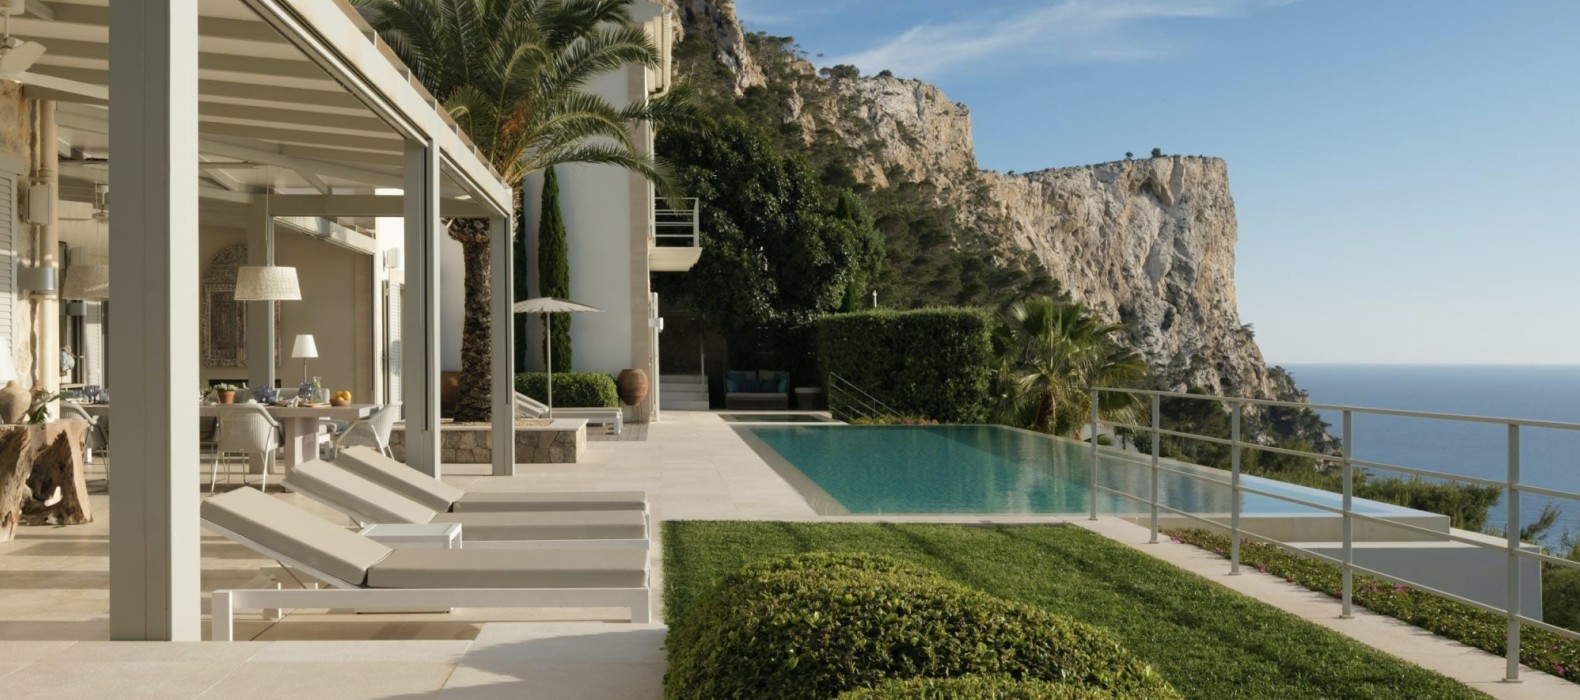 Exterior pool area of Villa The Big Blue in Mallorca